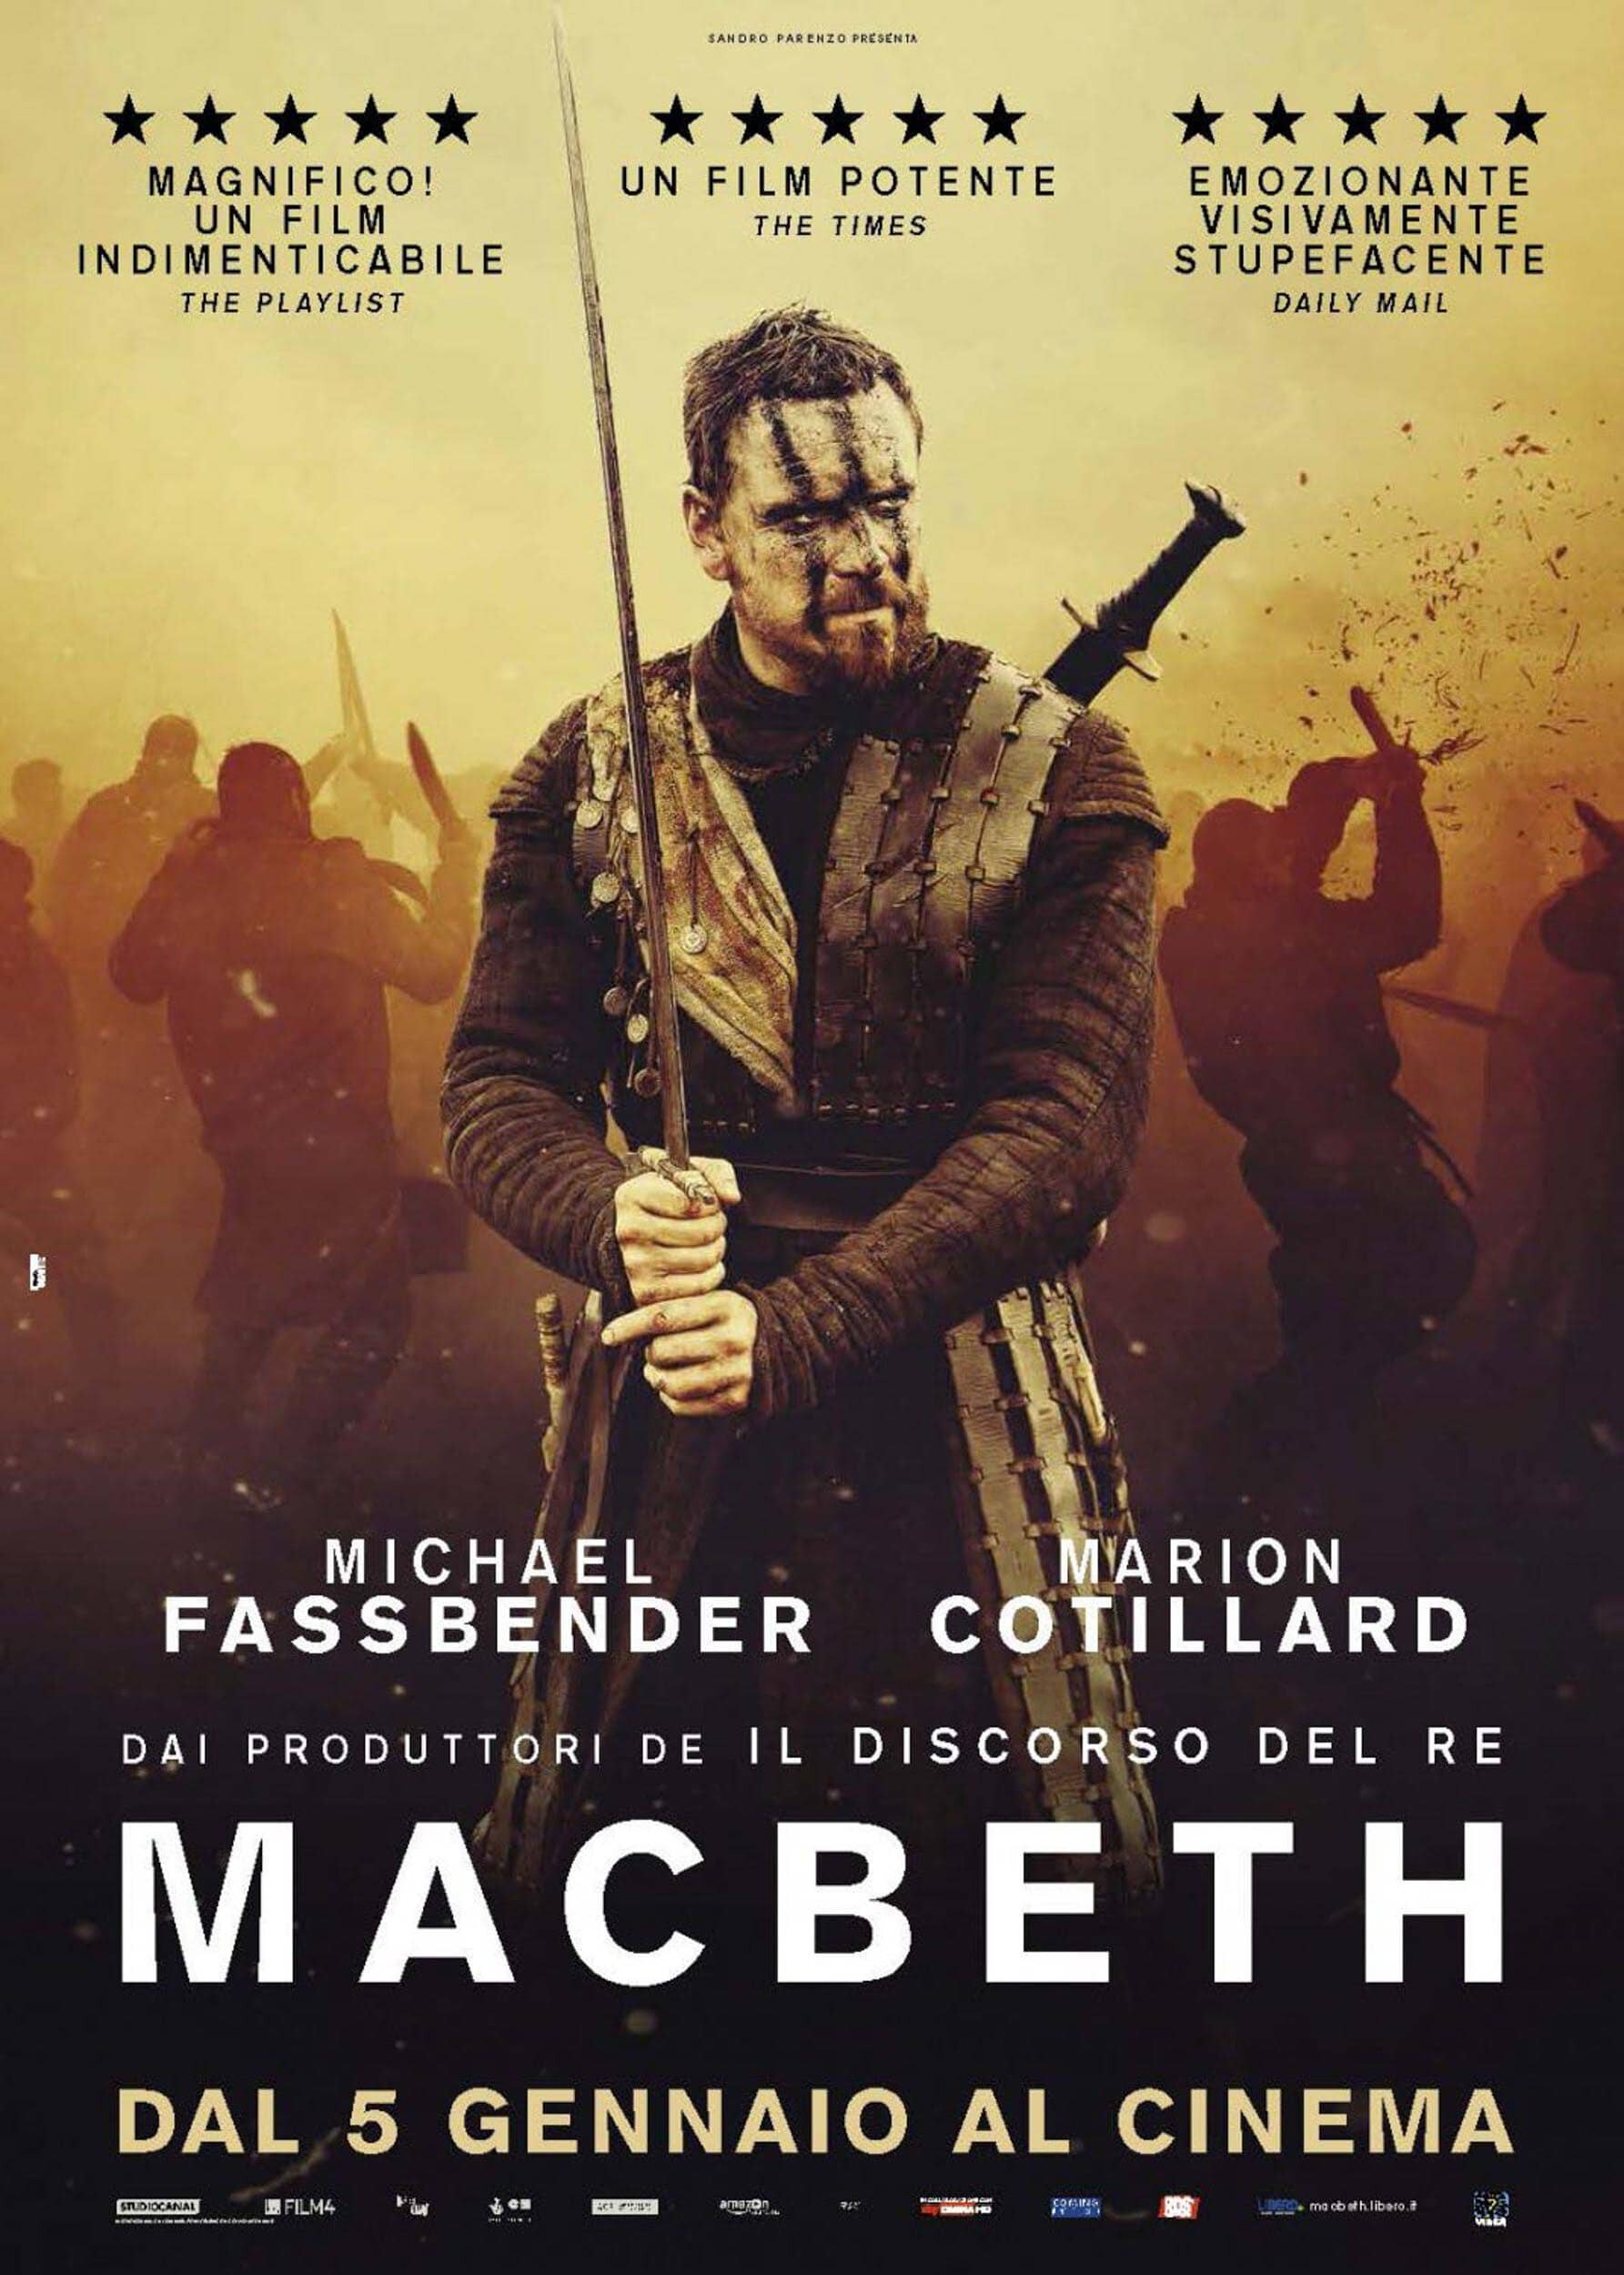 Michael Fassbender War movie 42"x24" Poster 001 Macbeth 